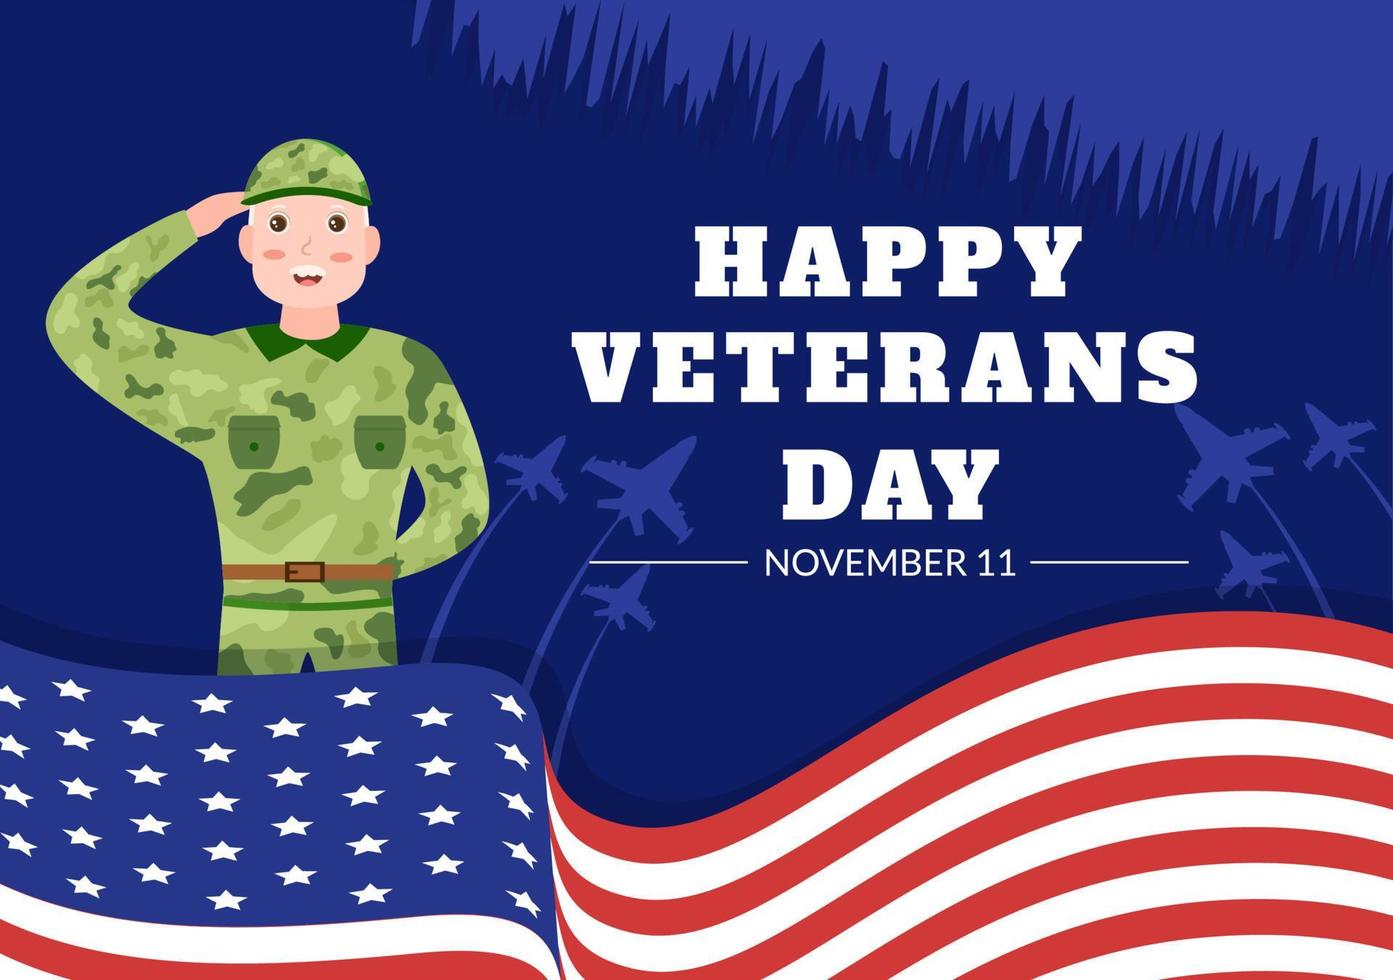 veterani giorno su novembre 11 modello mano disegnato cartone animato piatto illustrazione con Stati Uniti d'America bandiera e esercito per onorare tutti chi servito vettore